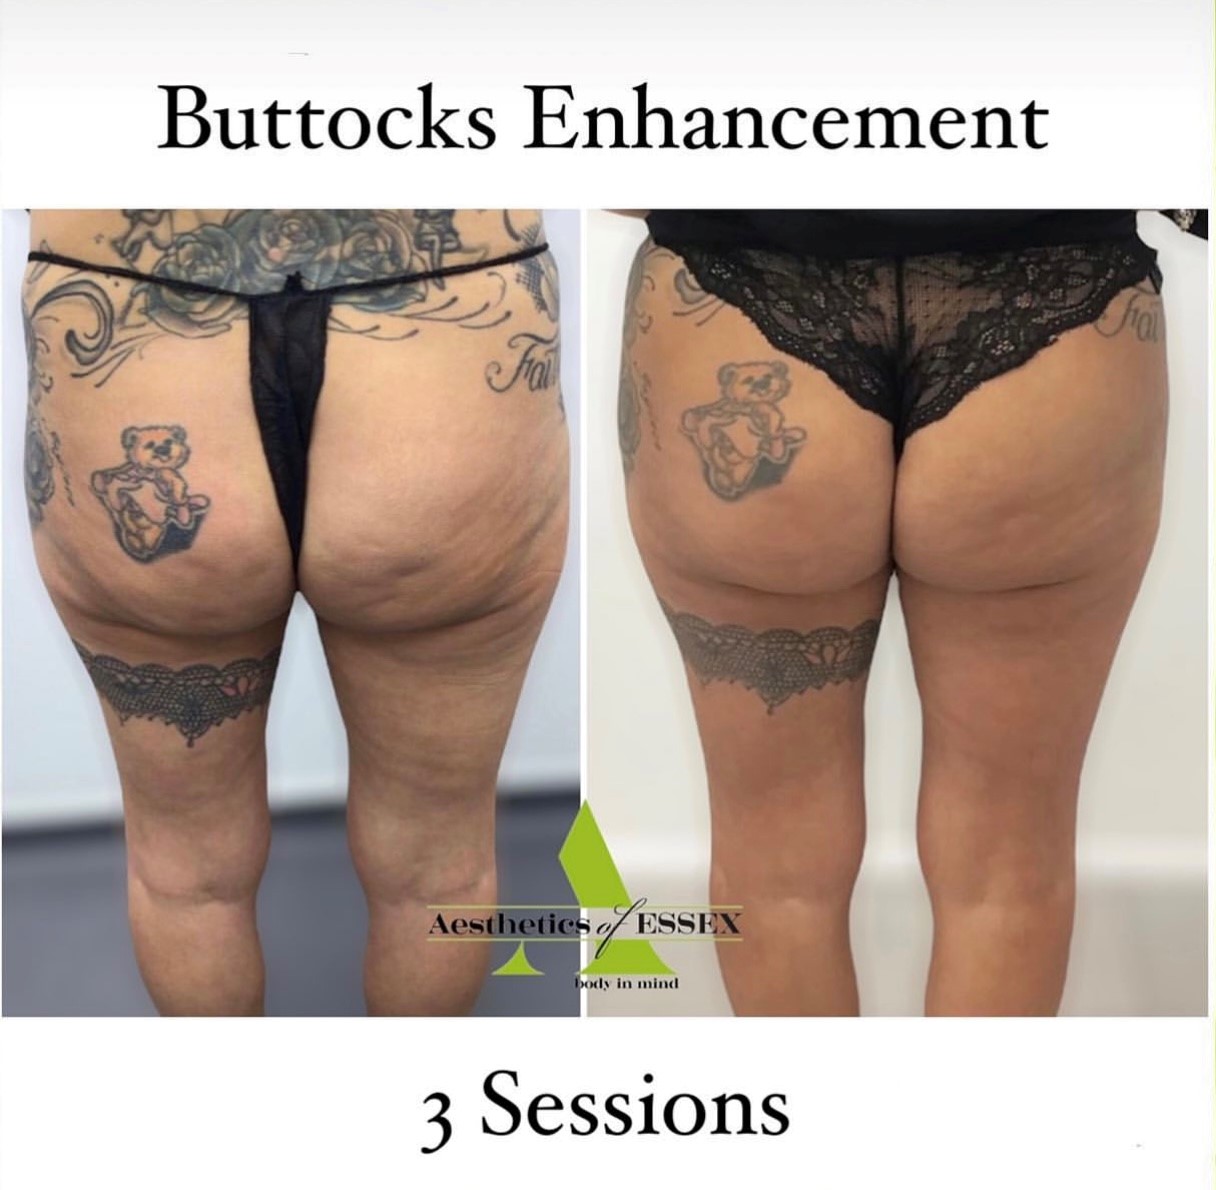 After buttocks enhancement